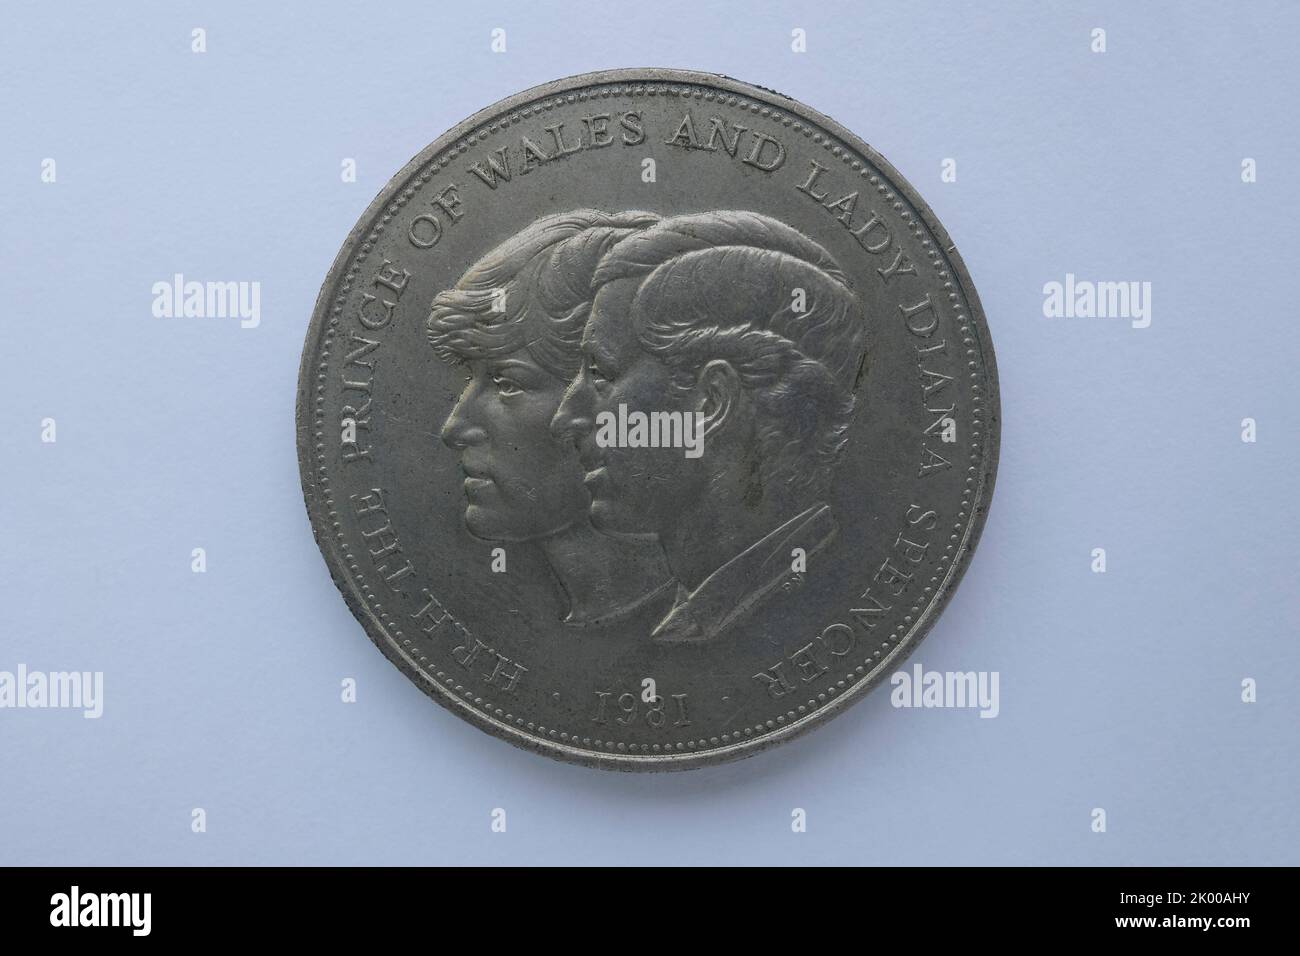 Vecchia moneta commemorativa delle nozze del Principe di Galles e di Lady Diana Spencer dall'anno 1981 Foto Stock